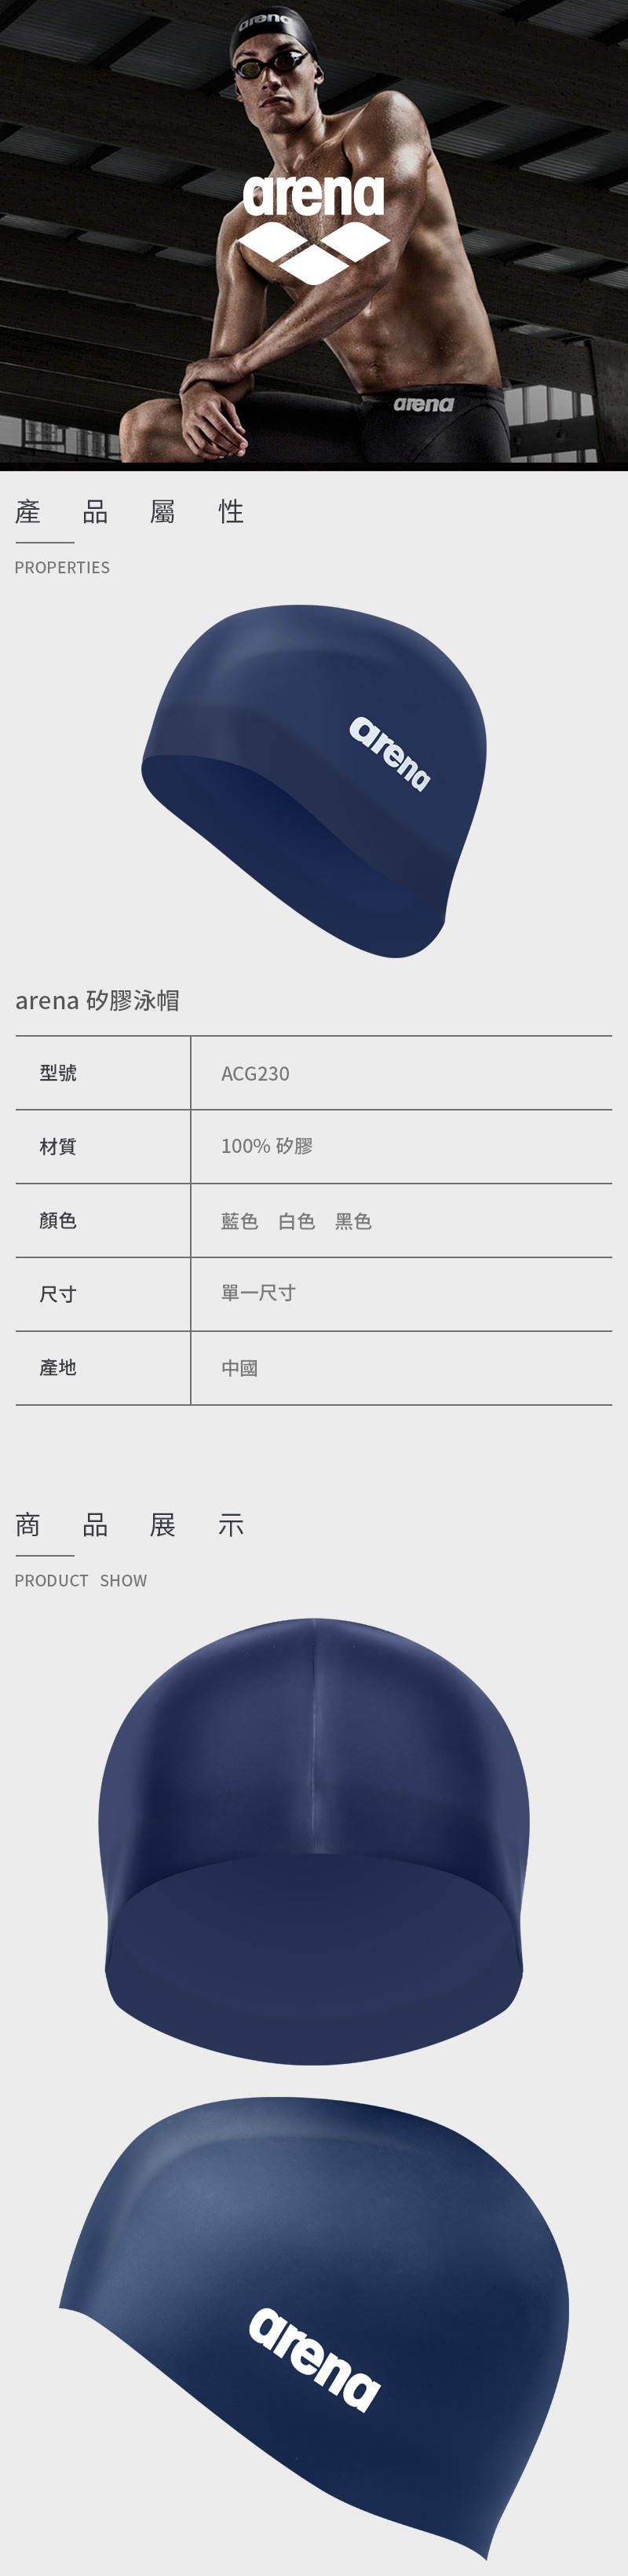 【arena】矽膠泳帽 ACG-230